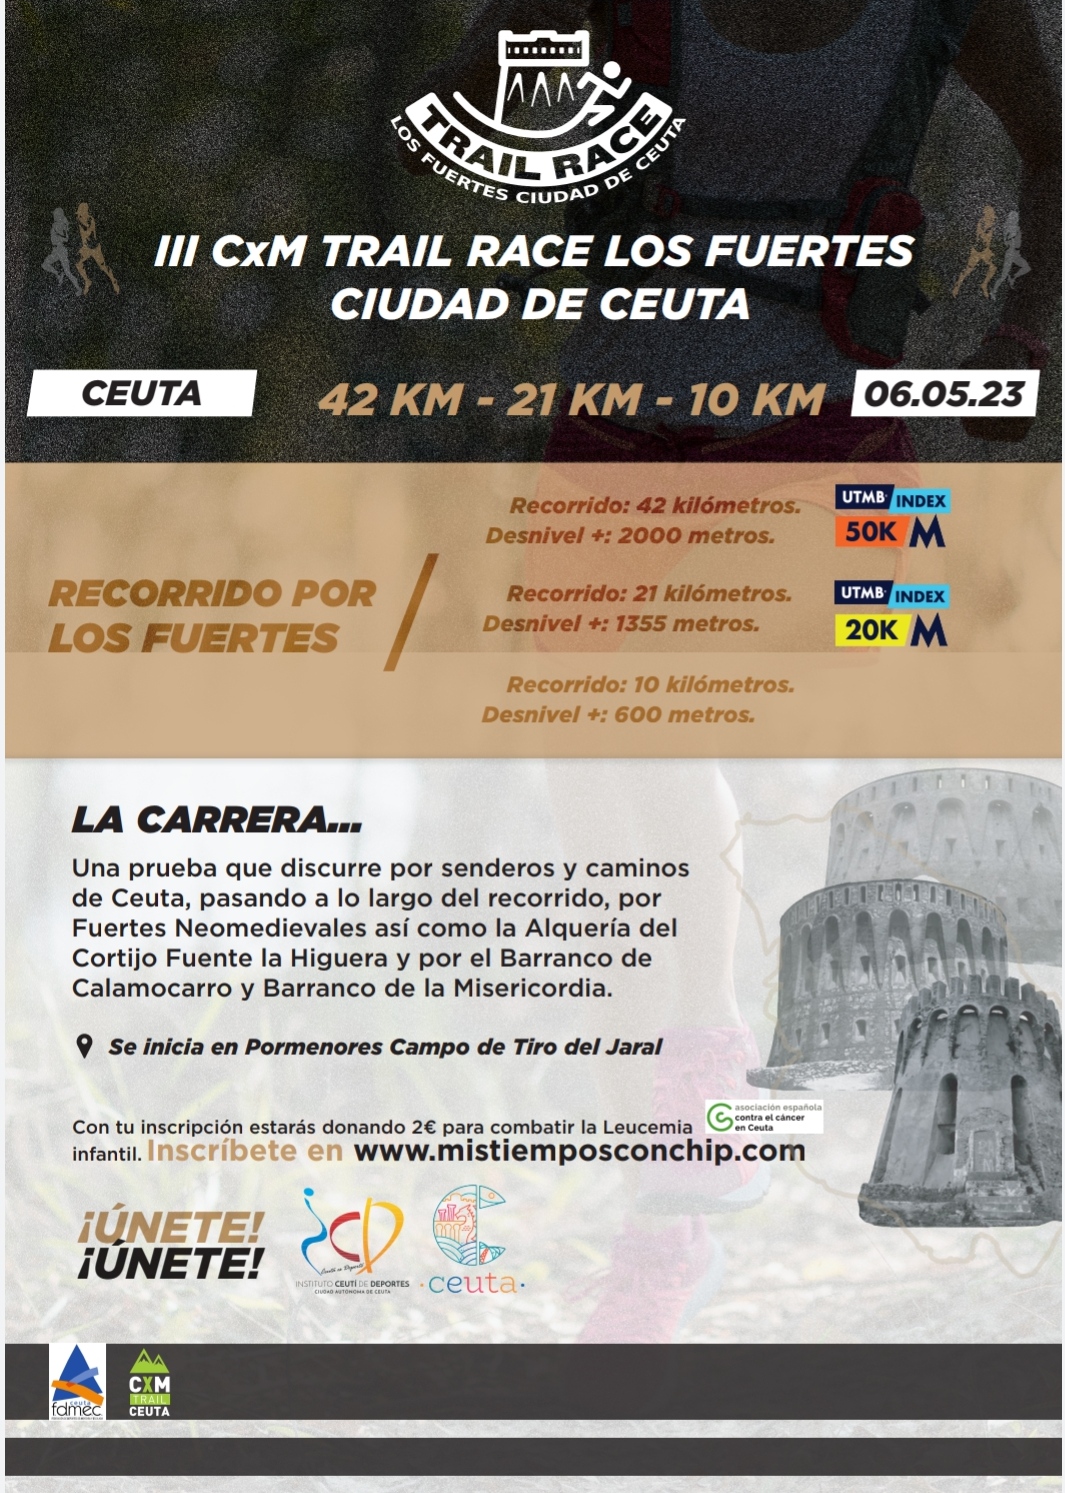 III CxM TRAIL RACE LOS FUERTES CIUDAD DE CEUTA